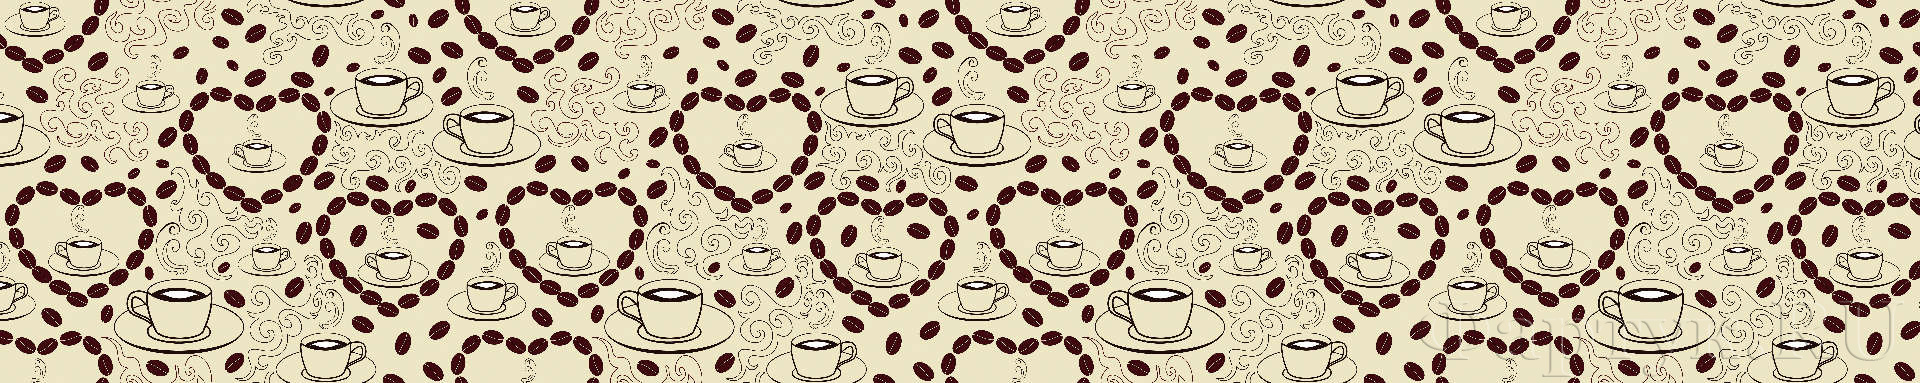 Рисованные чашки кофе, сердечки из кофейных зерен